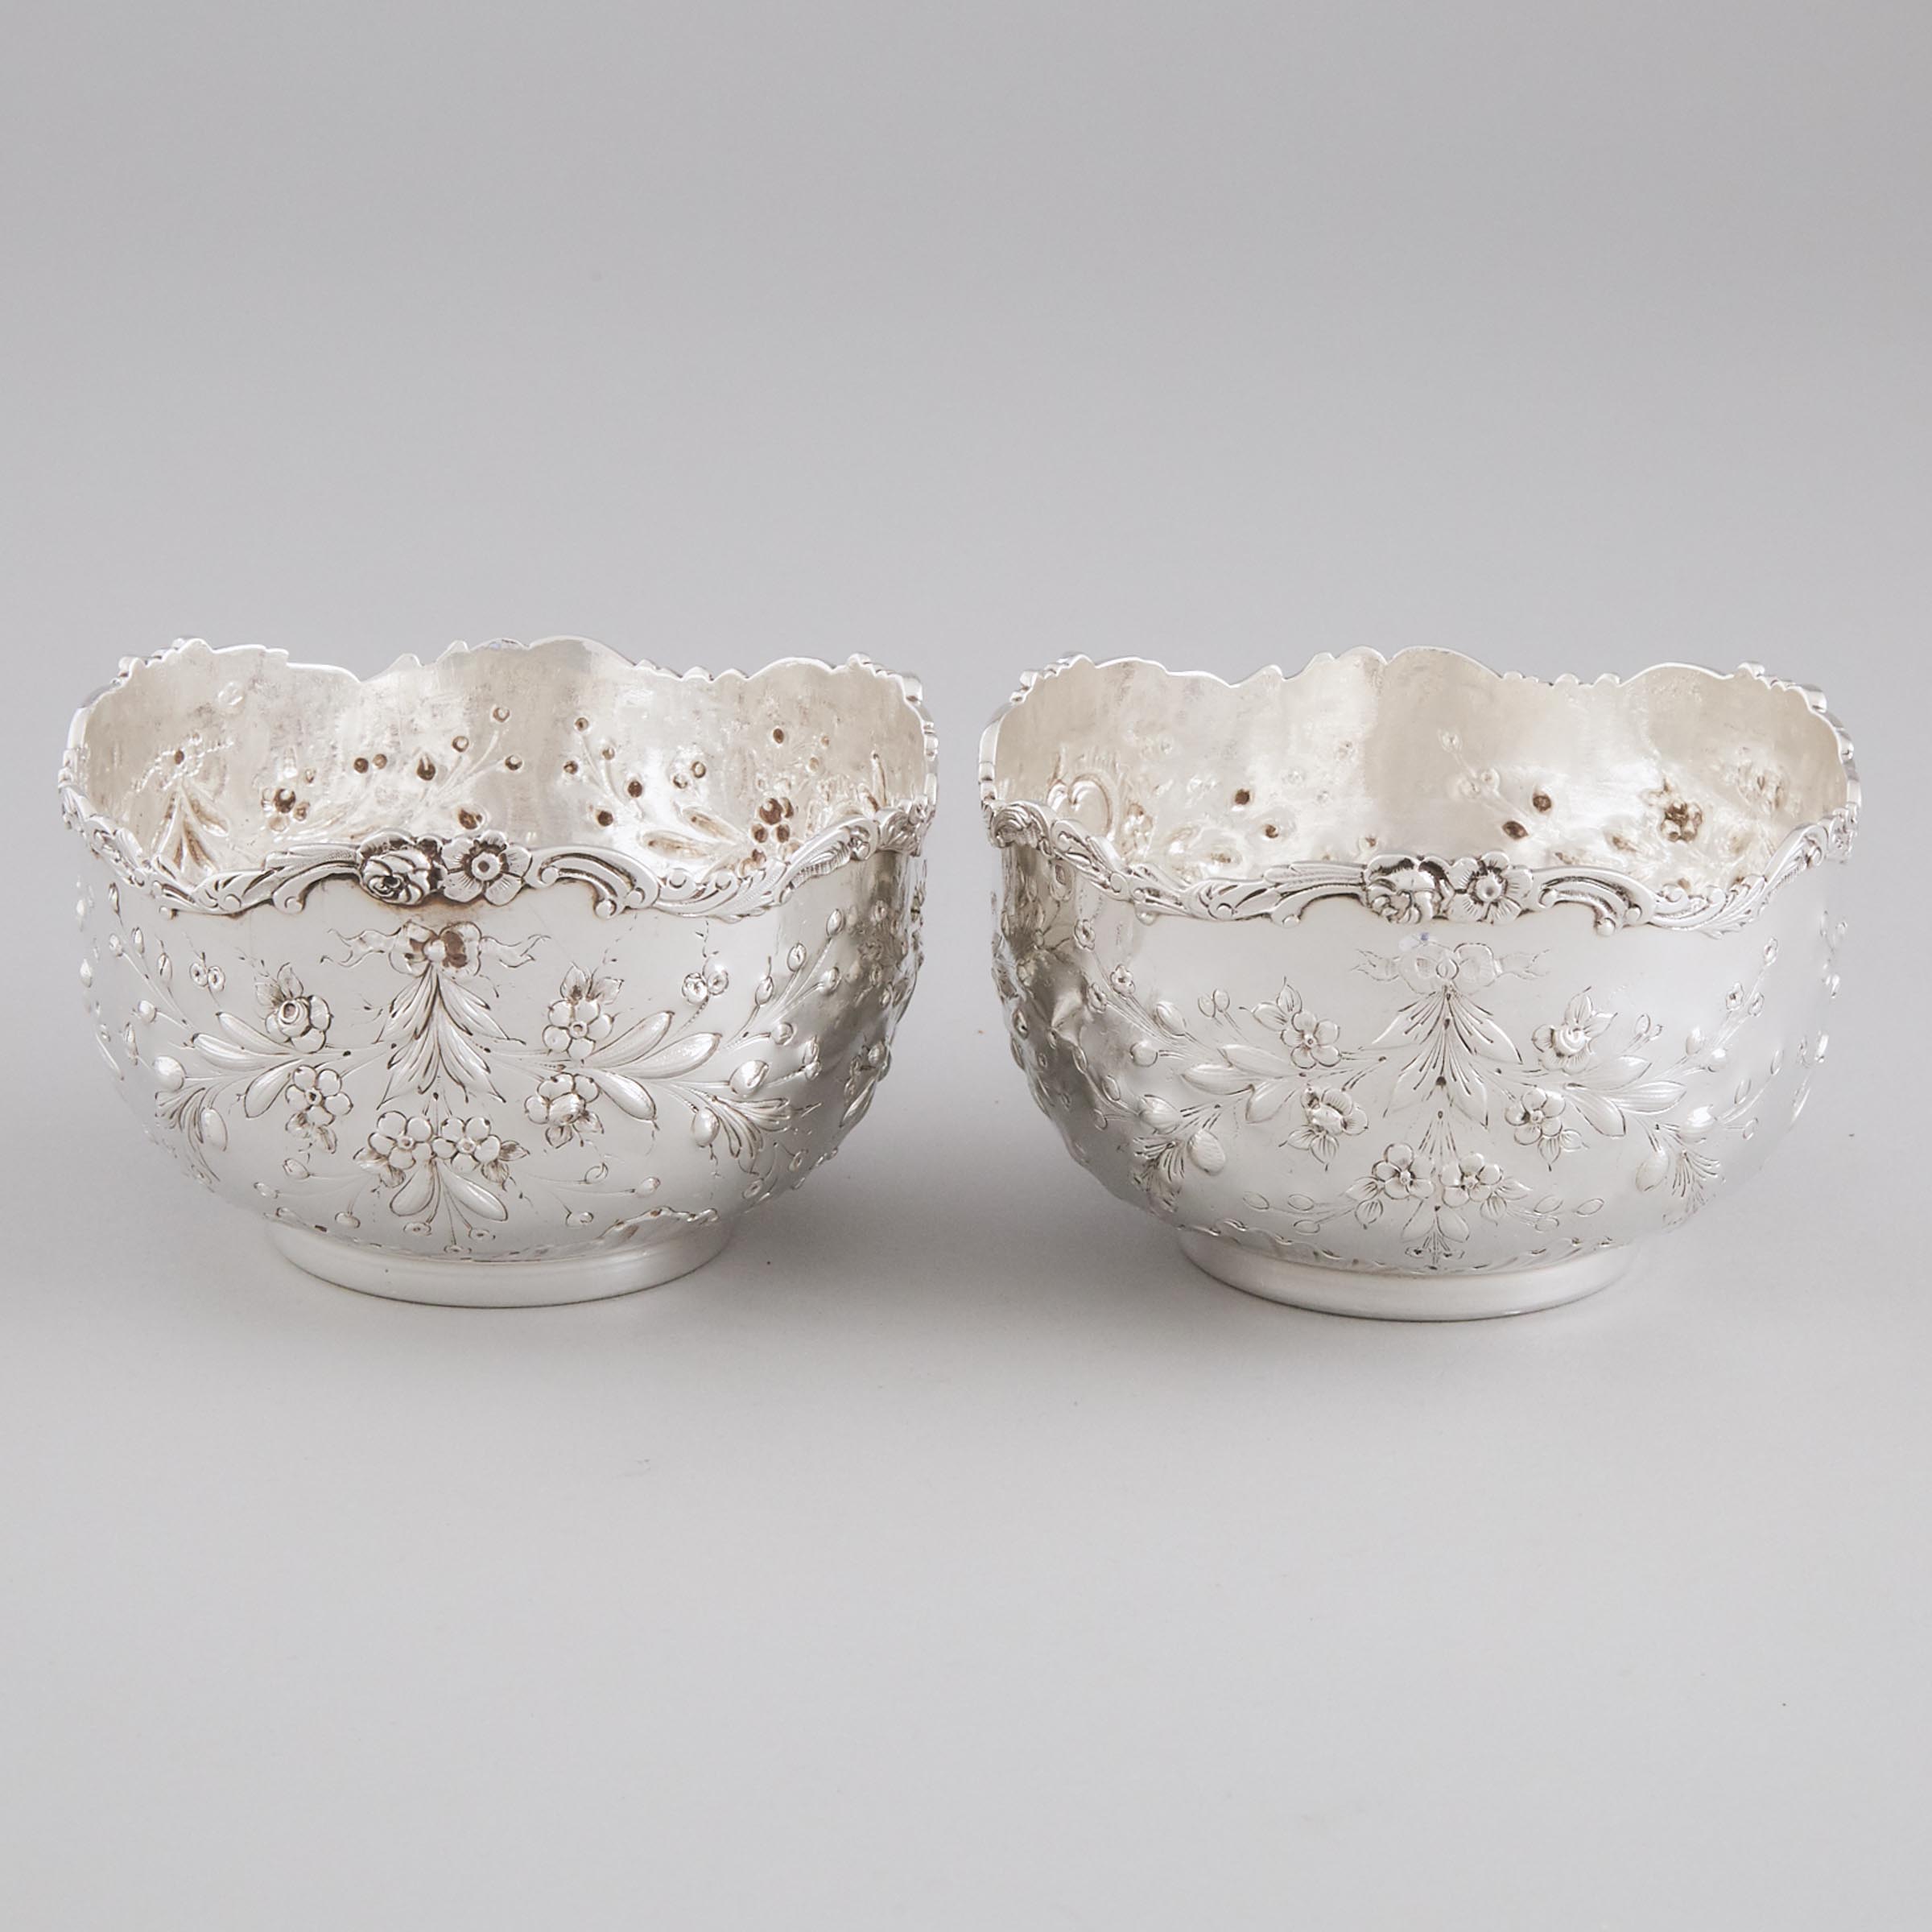 Pair of French Silver Finger Bowls, Emile Delaire, Paris, c.1900